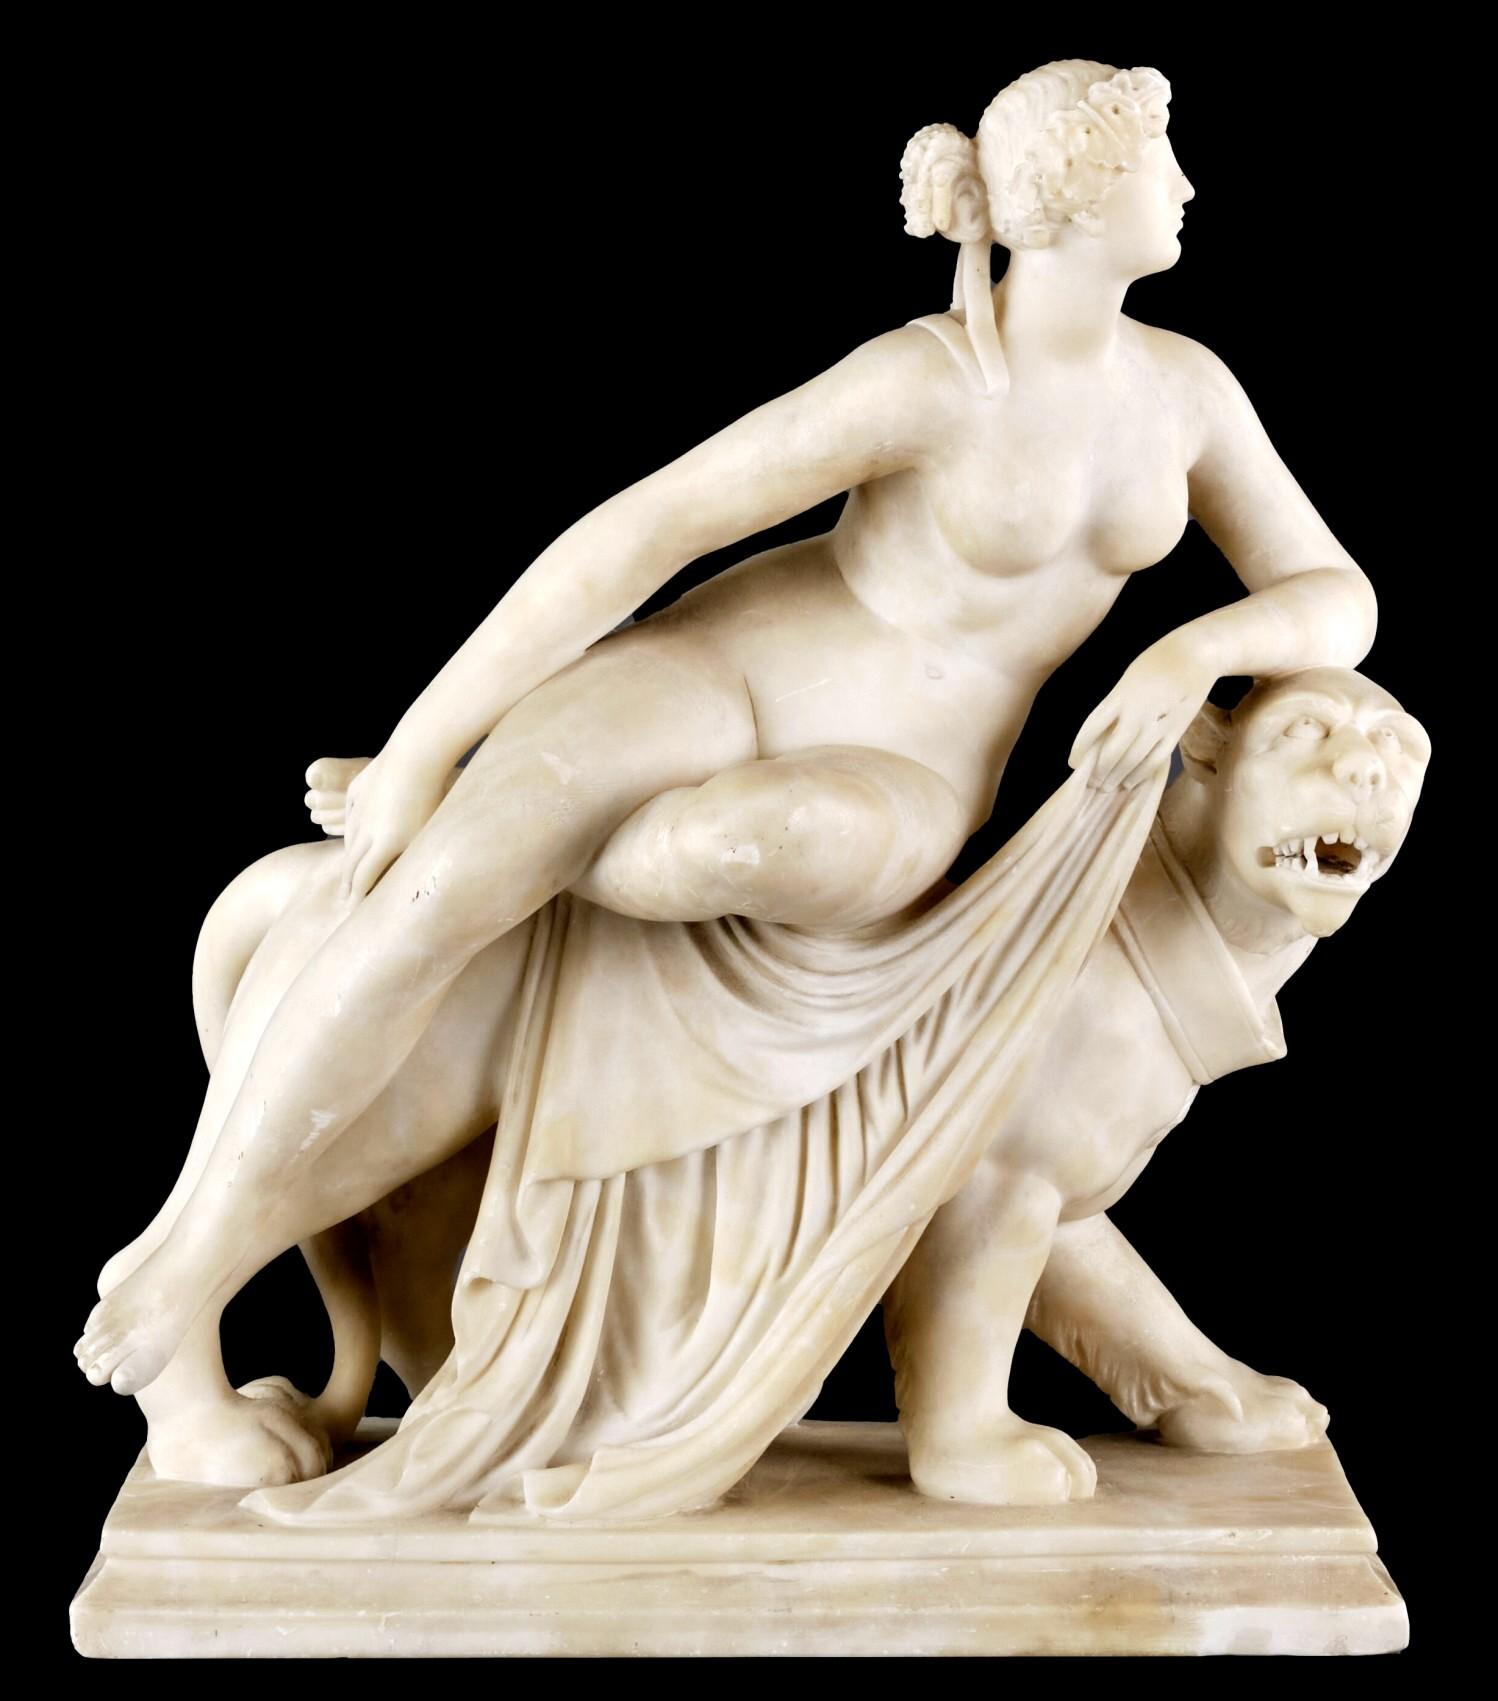 Grande figure d'albâtre finement sculptée représentant Ariane, épouse de Dionysos, le dieu du vin, ornée d'un diadème de feuilles de vigne et reposant sur le dos de la panthère de Dionysos. 
Sculptée avec sensibilité et habileté dans des proportions